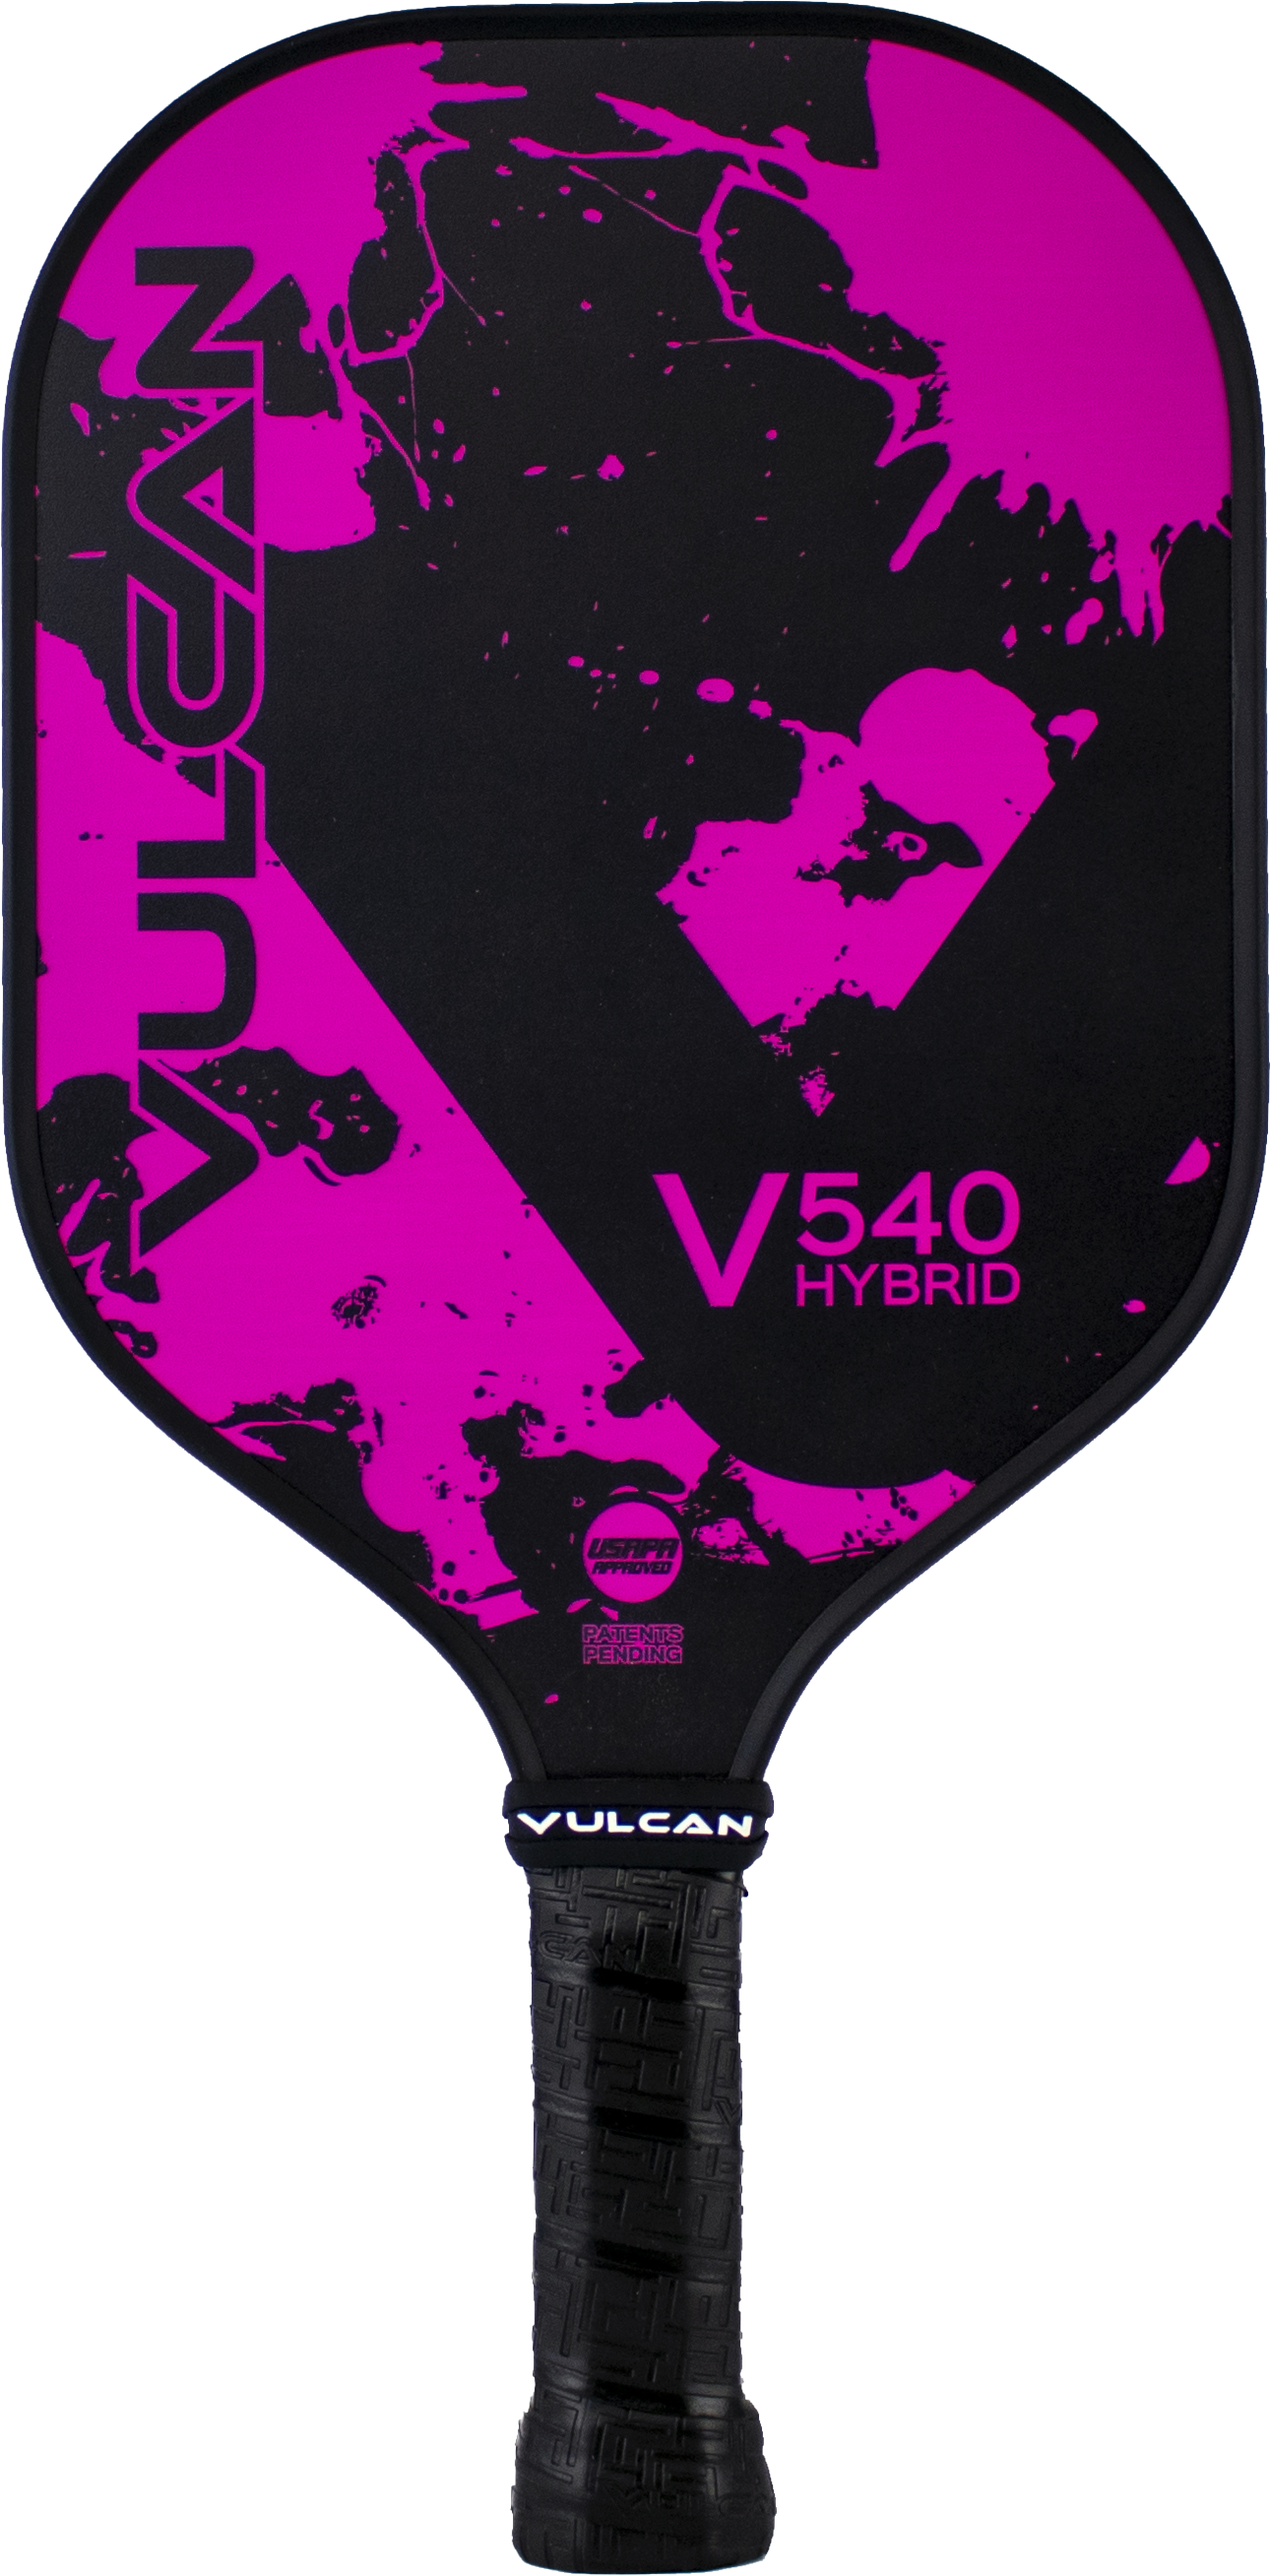 Vulcan V540 Hybrid Pickleball Paddle